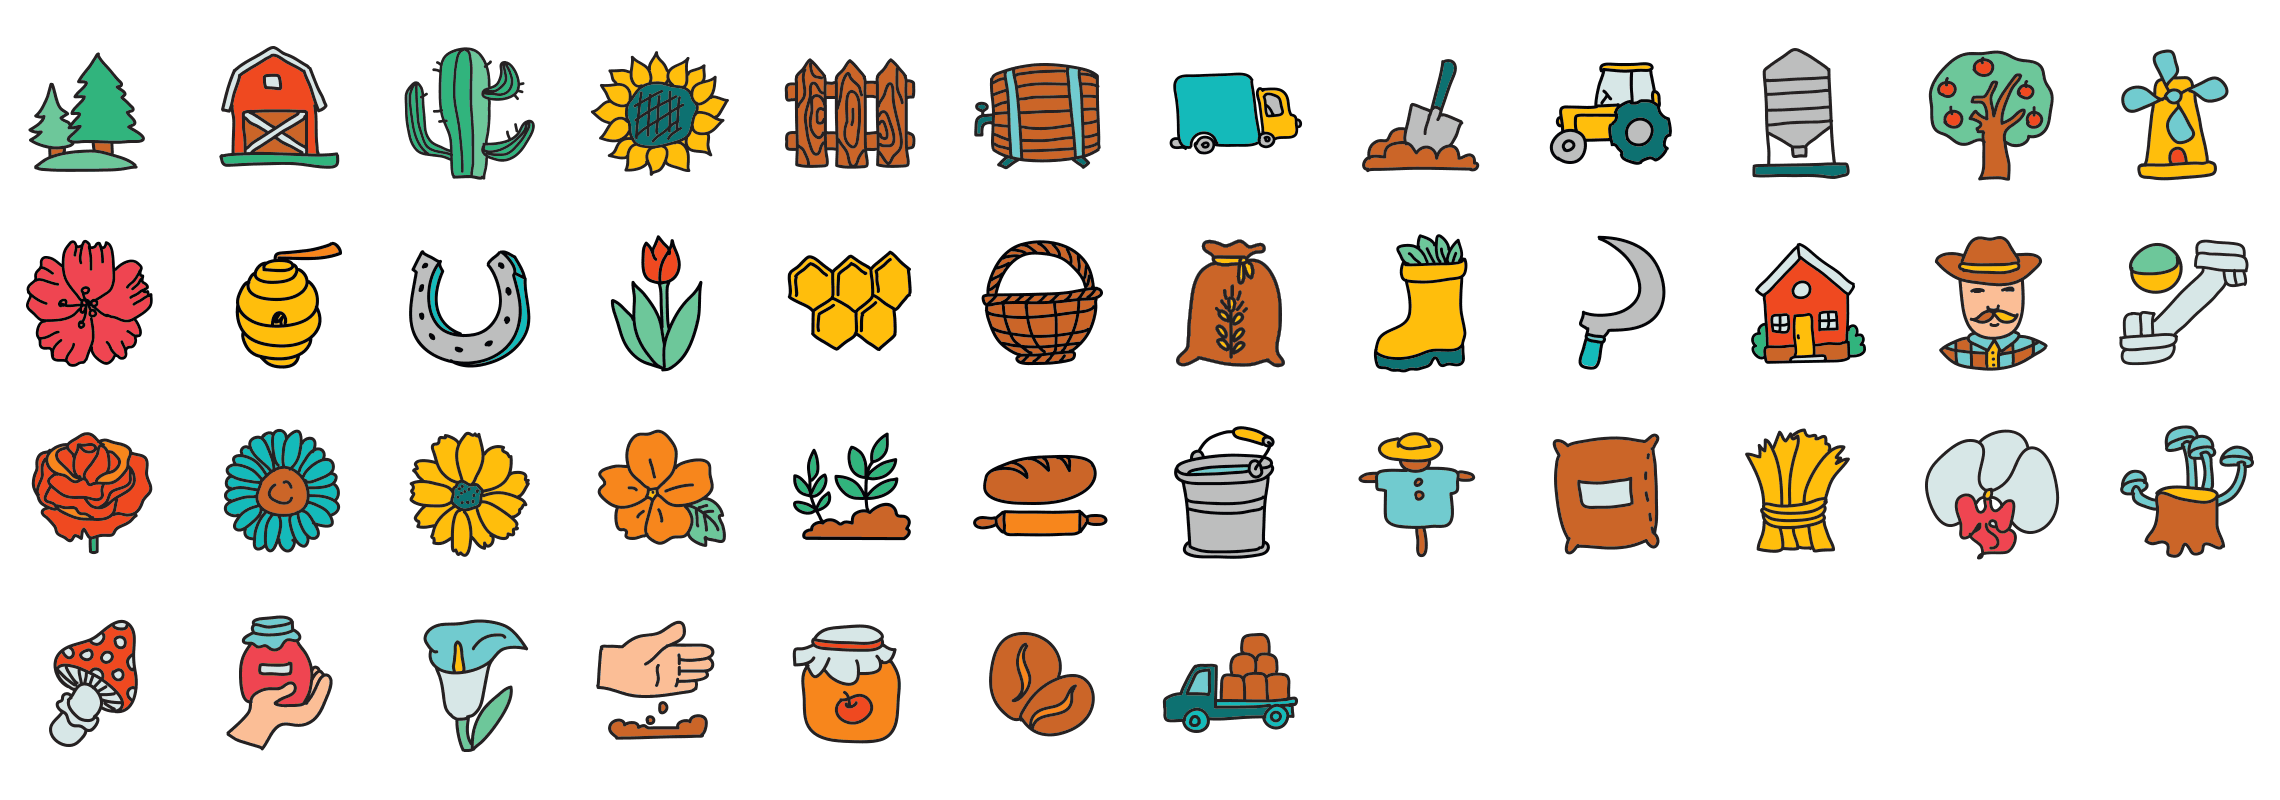 Farm-doodle-icons